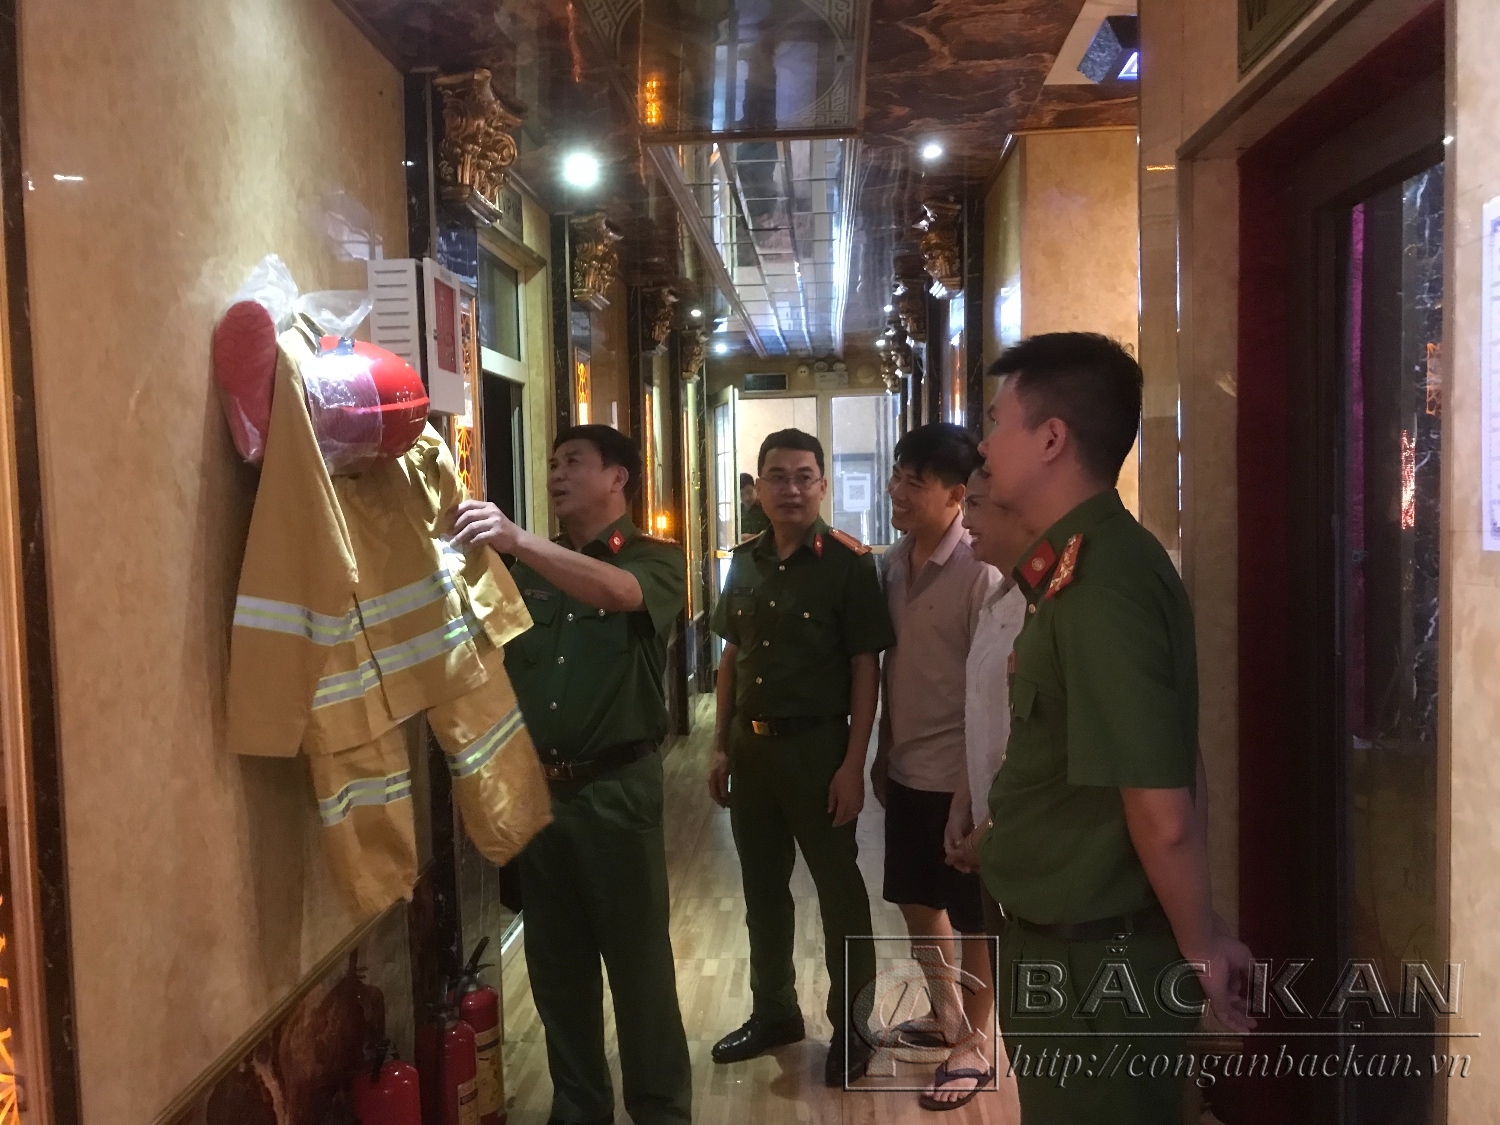  Đại tá Nguyễn Thanh Tuân, Phó Giám đốc Công an tỉnh trực tiếp chỉ đạo công tác kiểm tra điều kiện an toàn về PCCC tại quán karaoke New1 trên địa bàn Thành phố Bắc Kạn